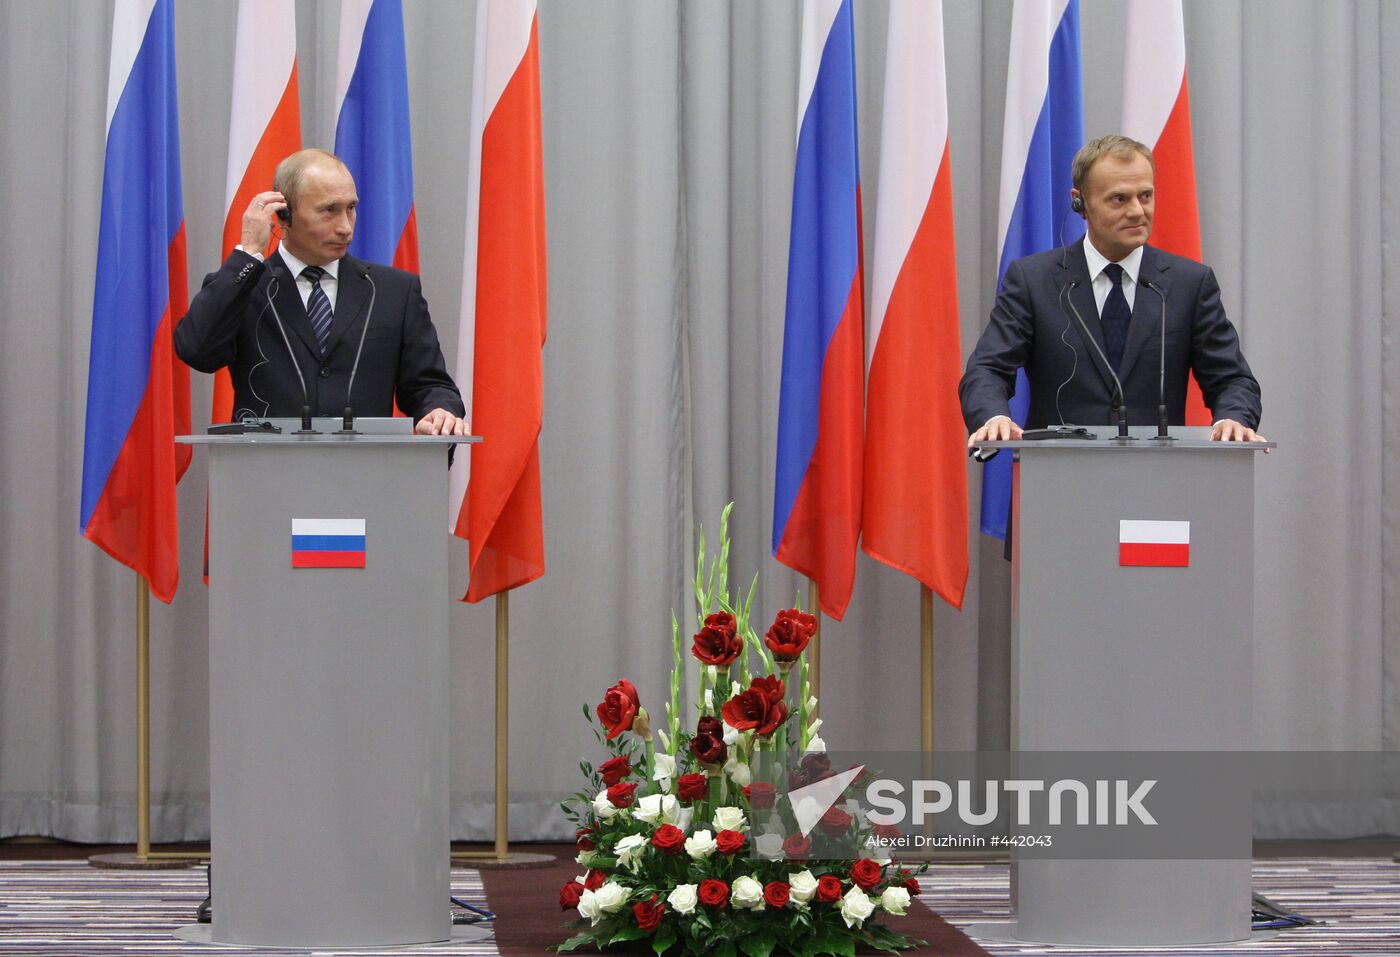 Vladimir Putin on a working visit to Poland